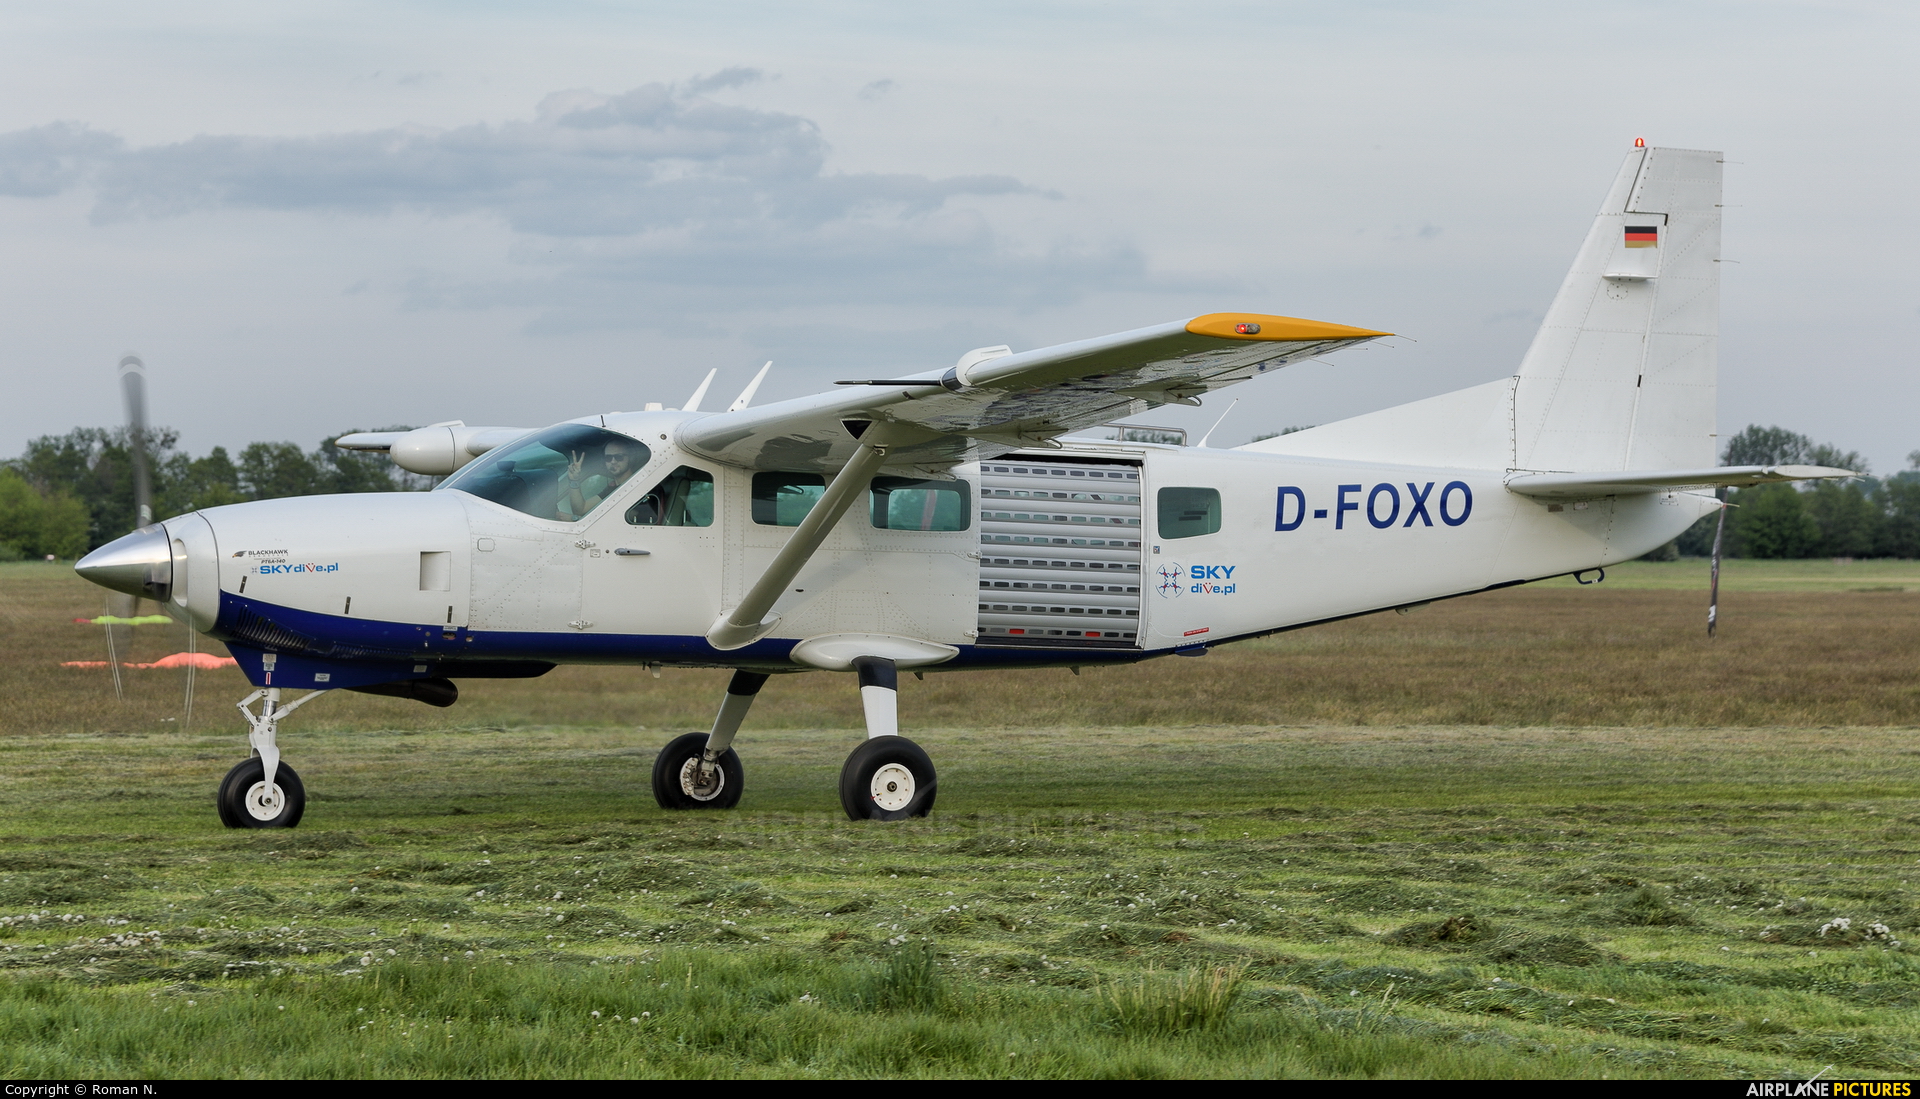 Skydive.pl D-FOXO aircraft at Włocławek - Kruszyn